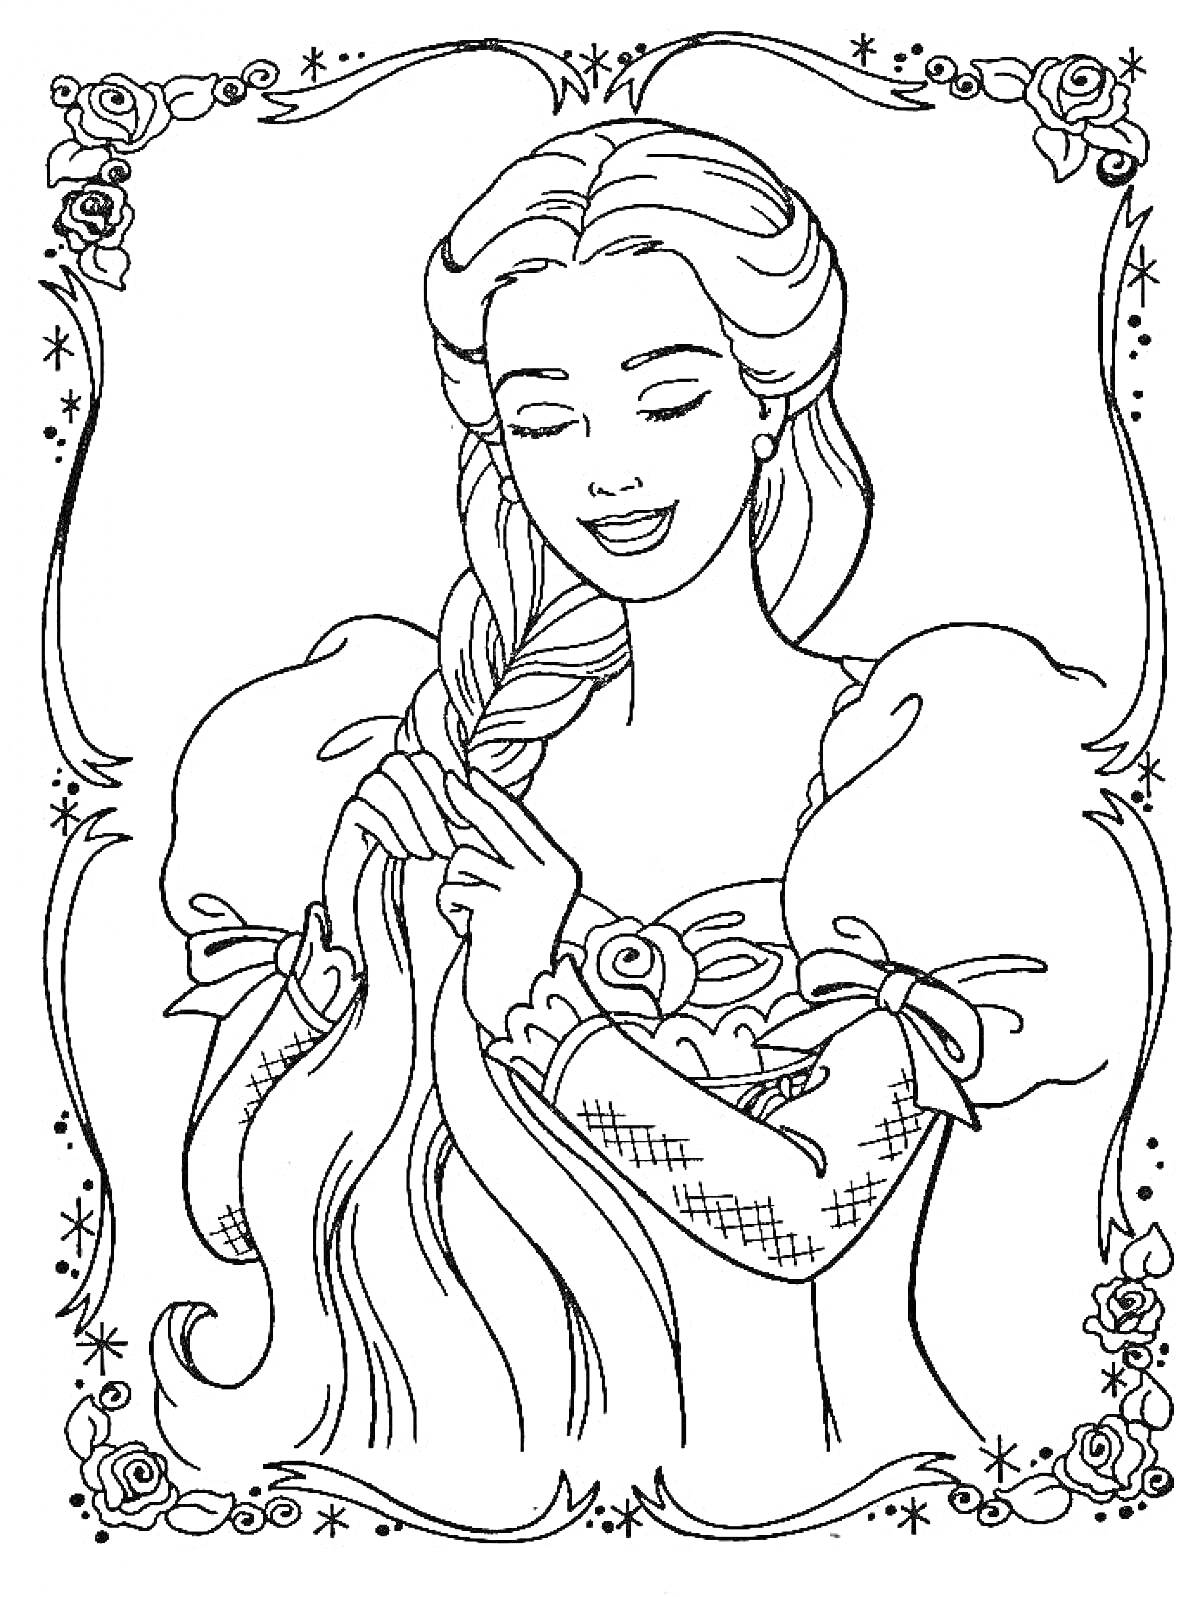 Раскраска Барби с длинными волосами в платье с пышными рукавами, заплетающая косу, в декоративной рамке с цветами и звездами